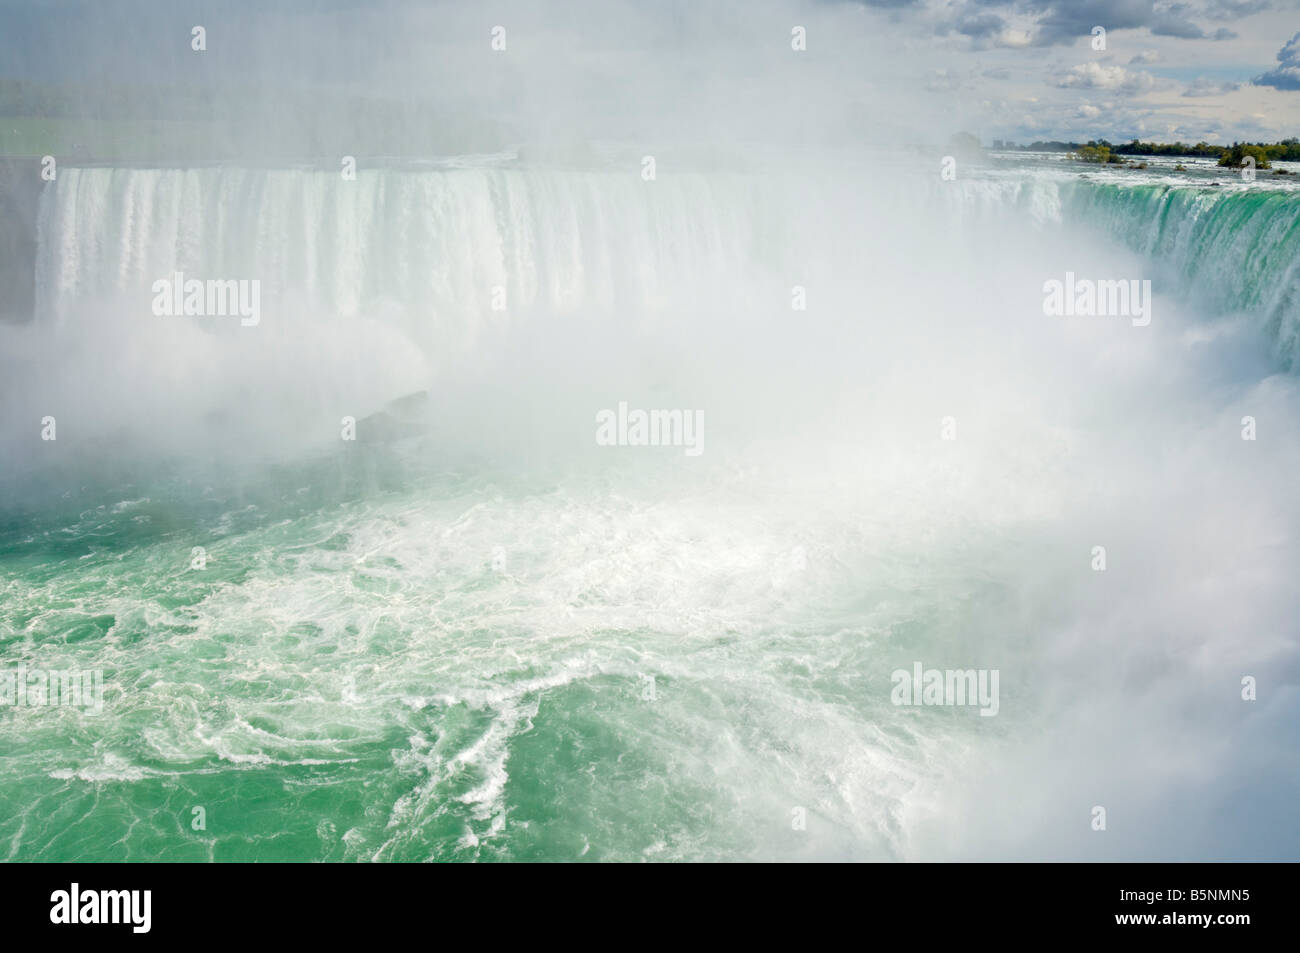 Das Hufeisen fällt auf die kanadische Seite der Niagara-Fälle auf Tne Niagara River in Ontario Kanada Stockfoto